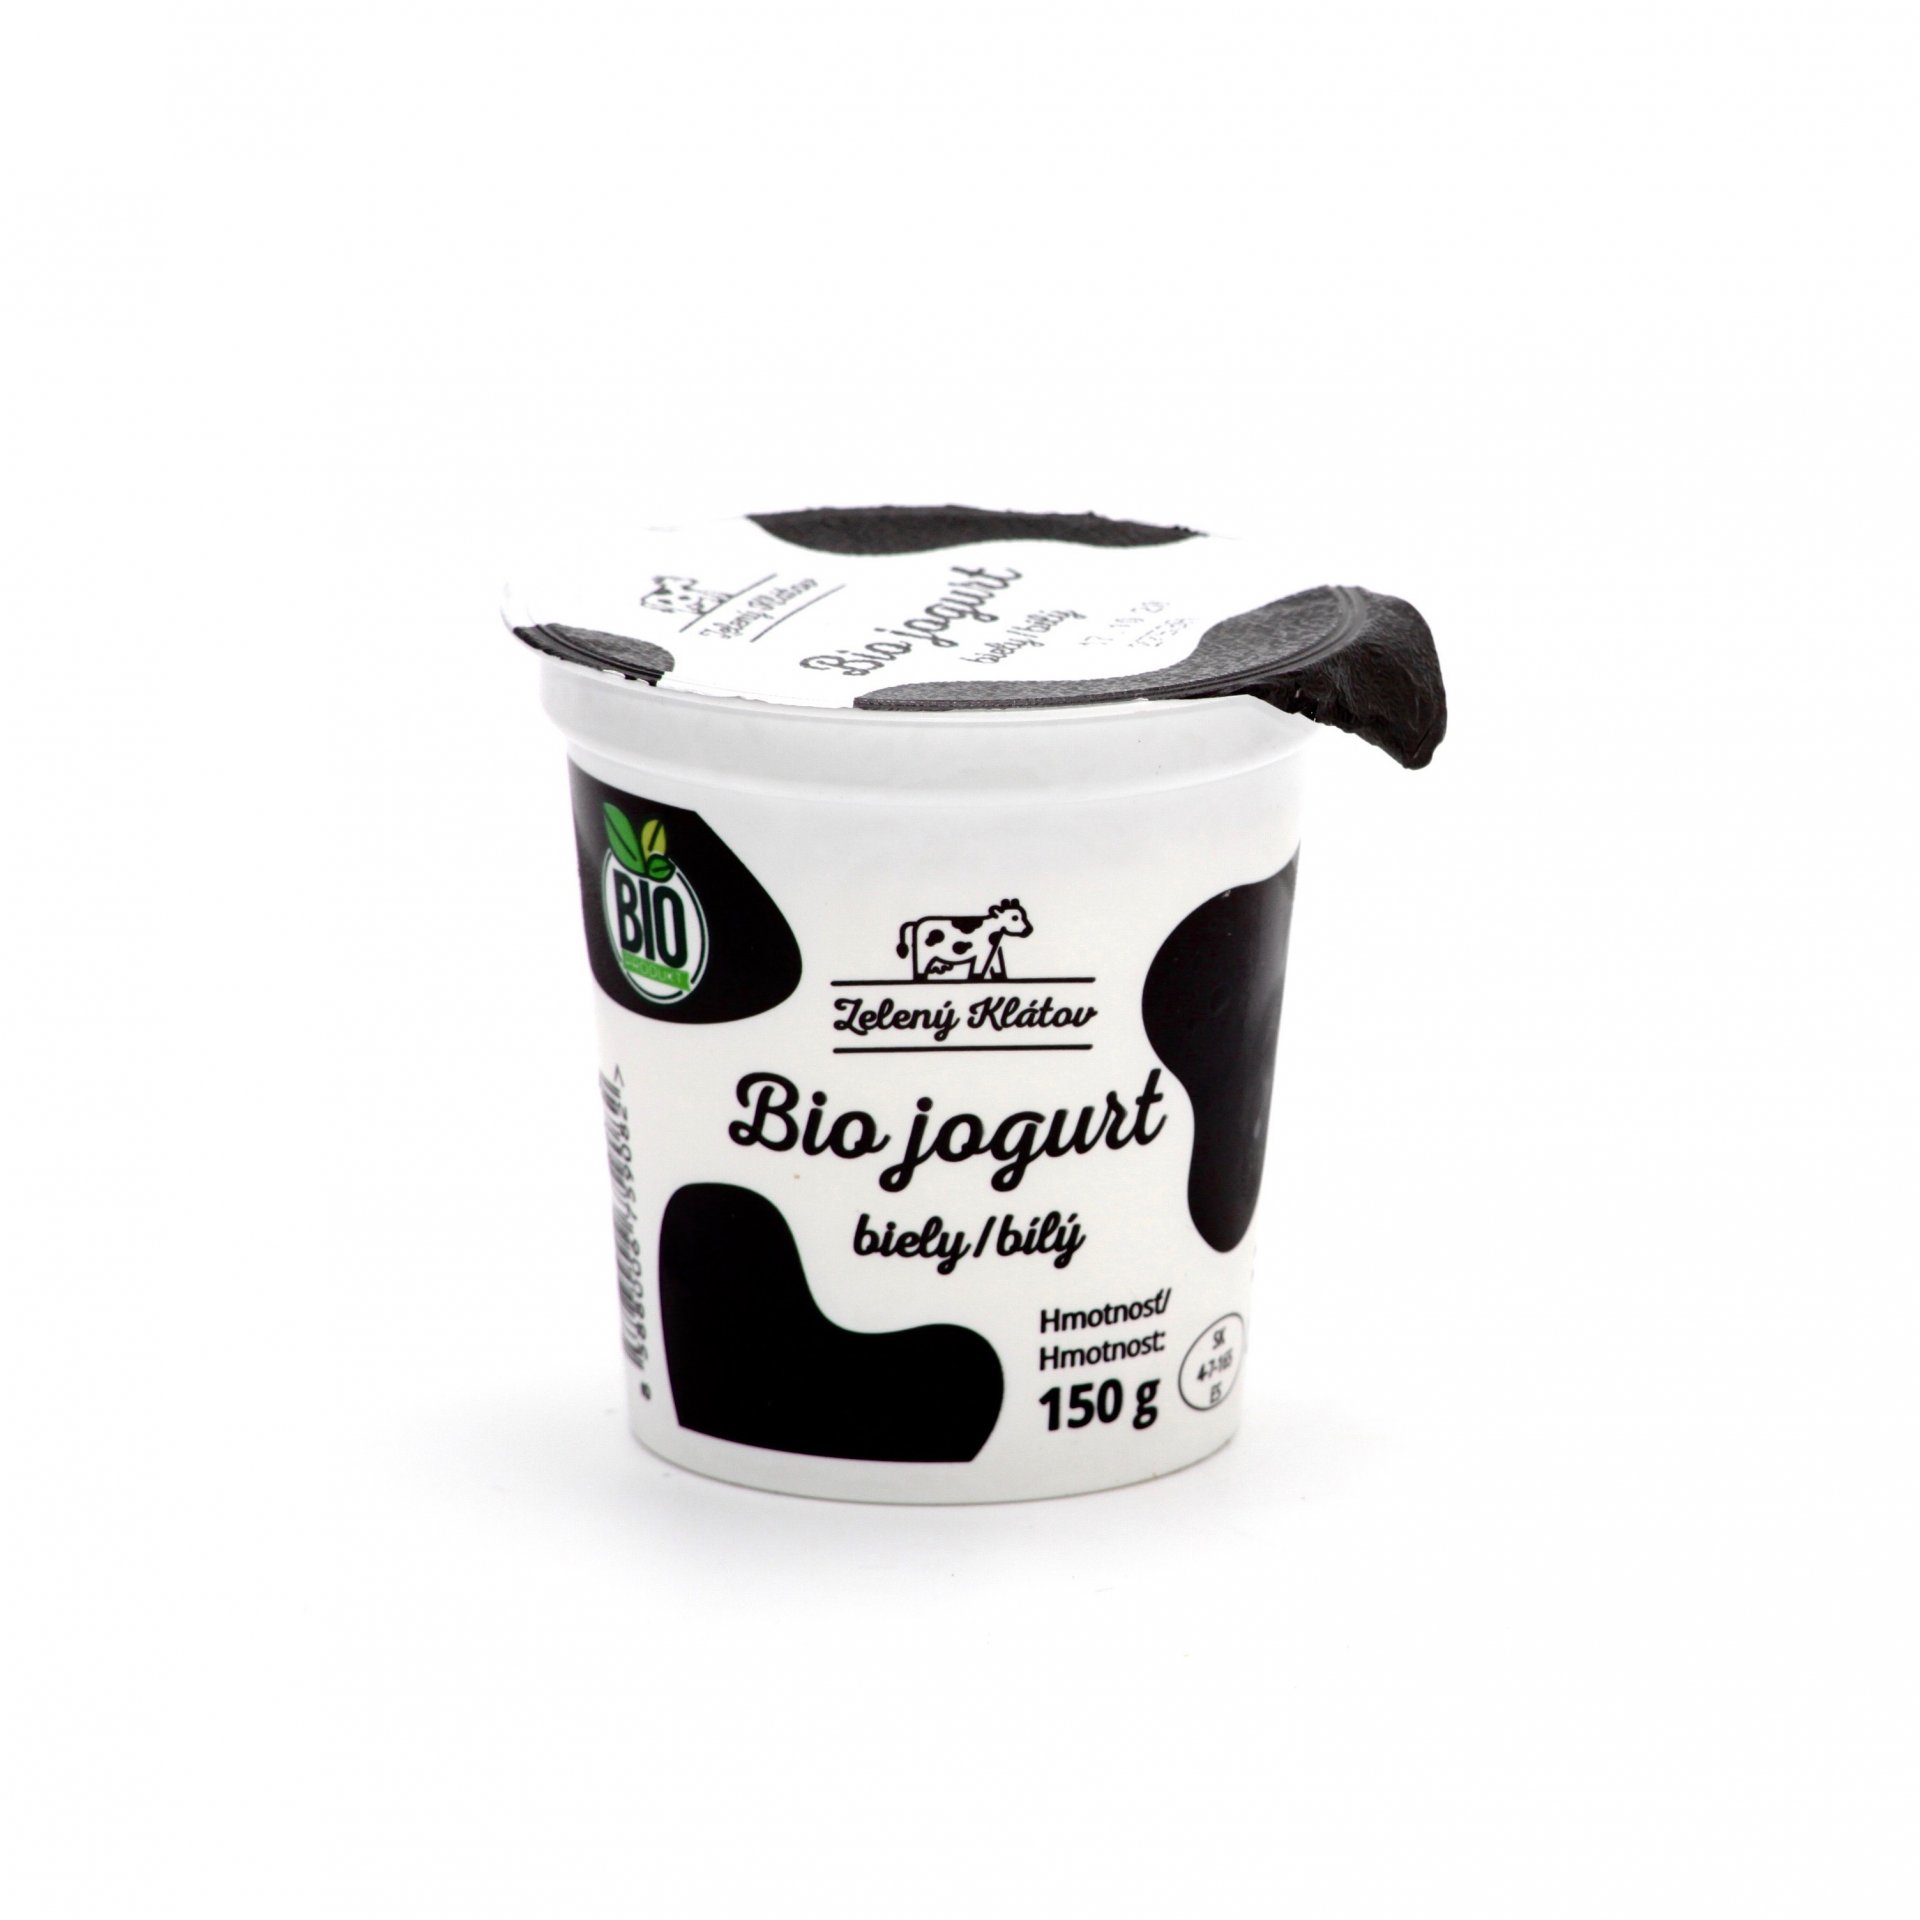 BIO jogurt biely 150g